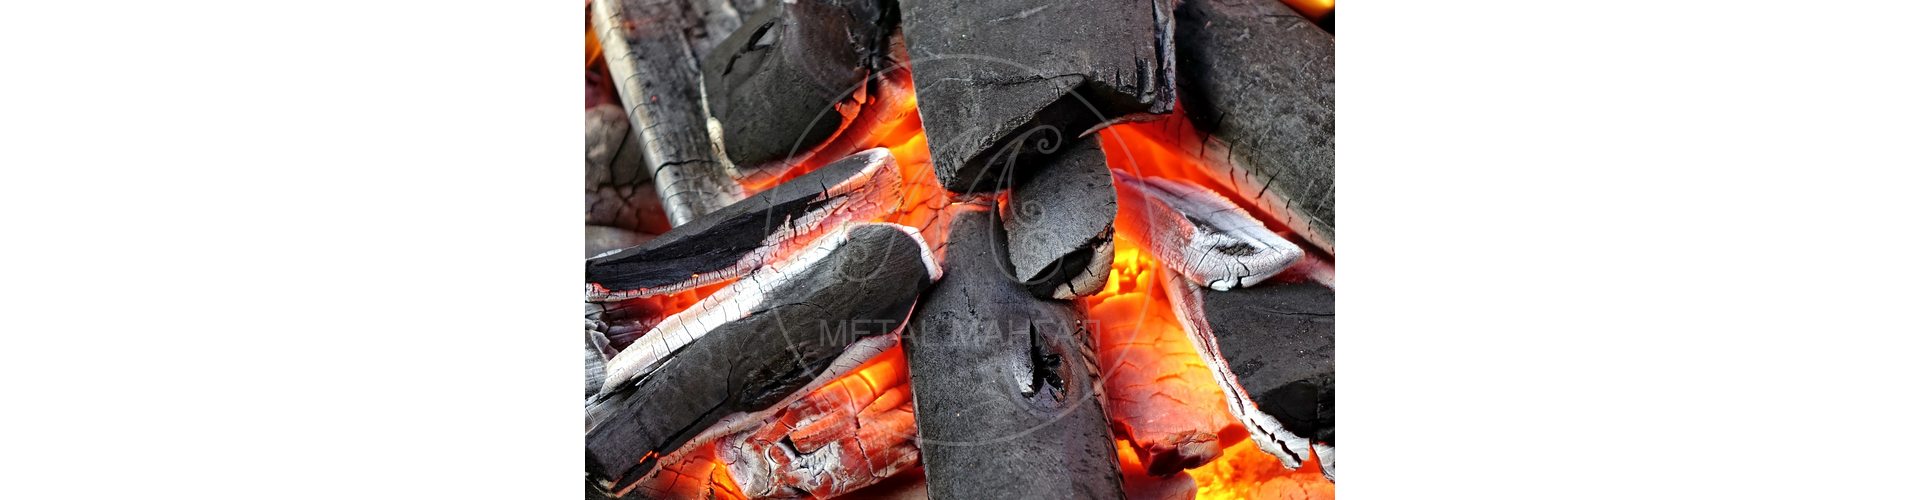 Как правильно разжечь мангал для шашлыка на углях?